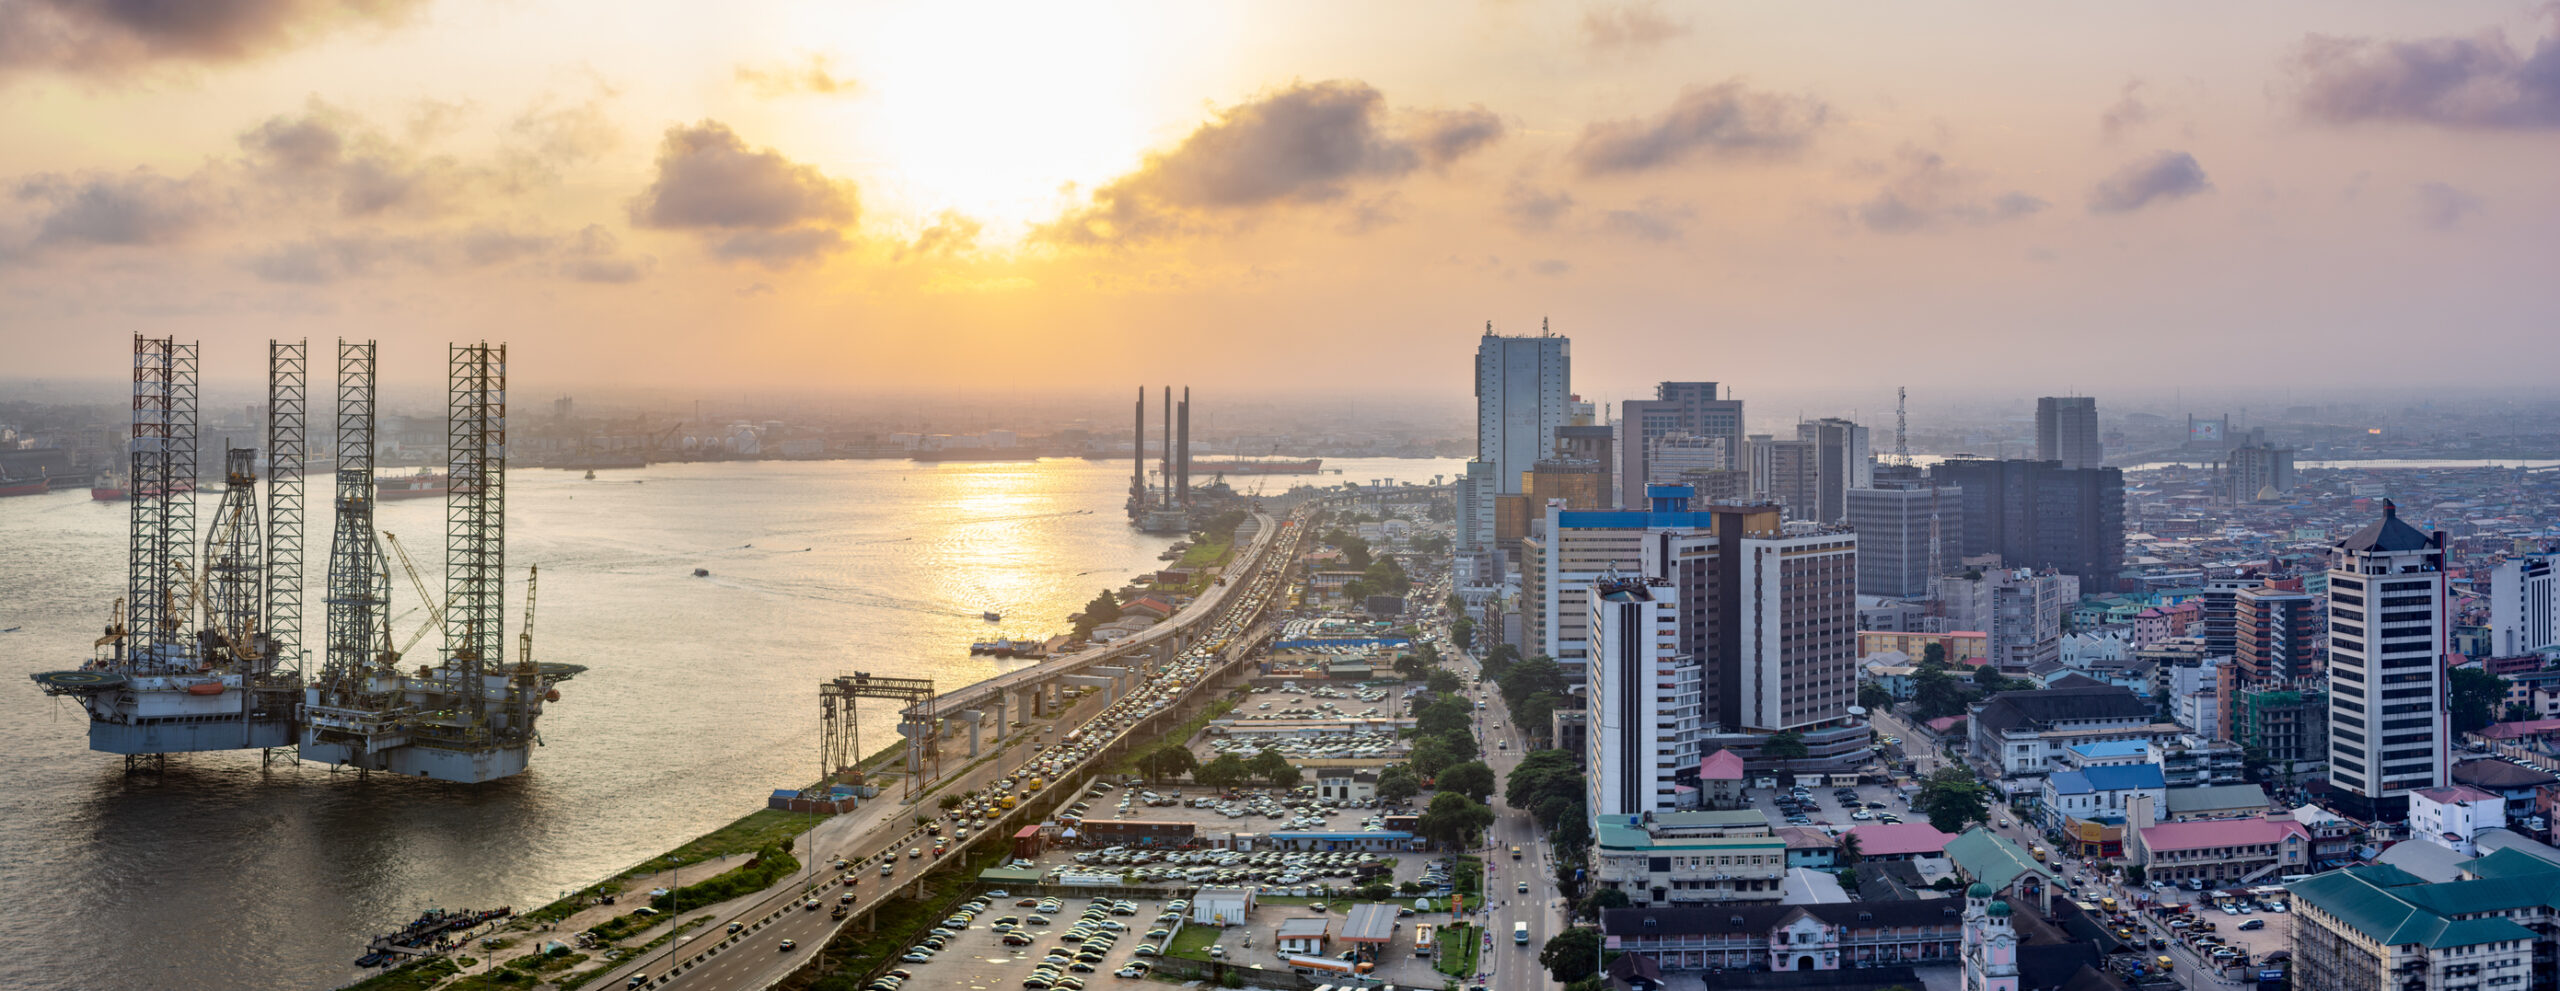 Infrastructures portuaires et vue sur la ville à Lagos Island au Niger